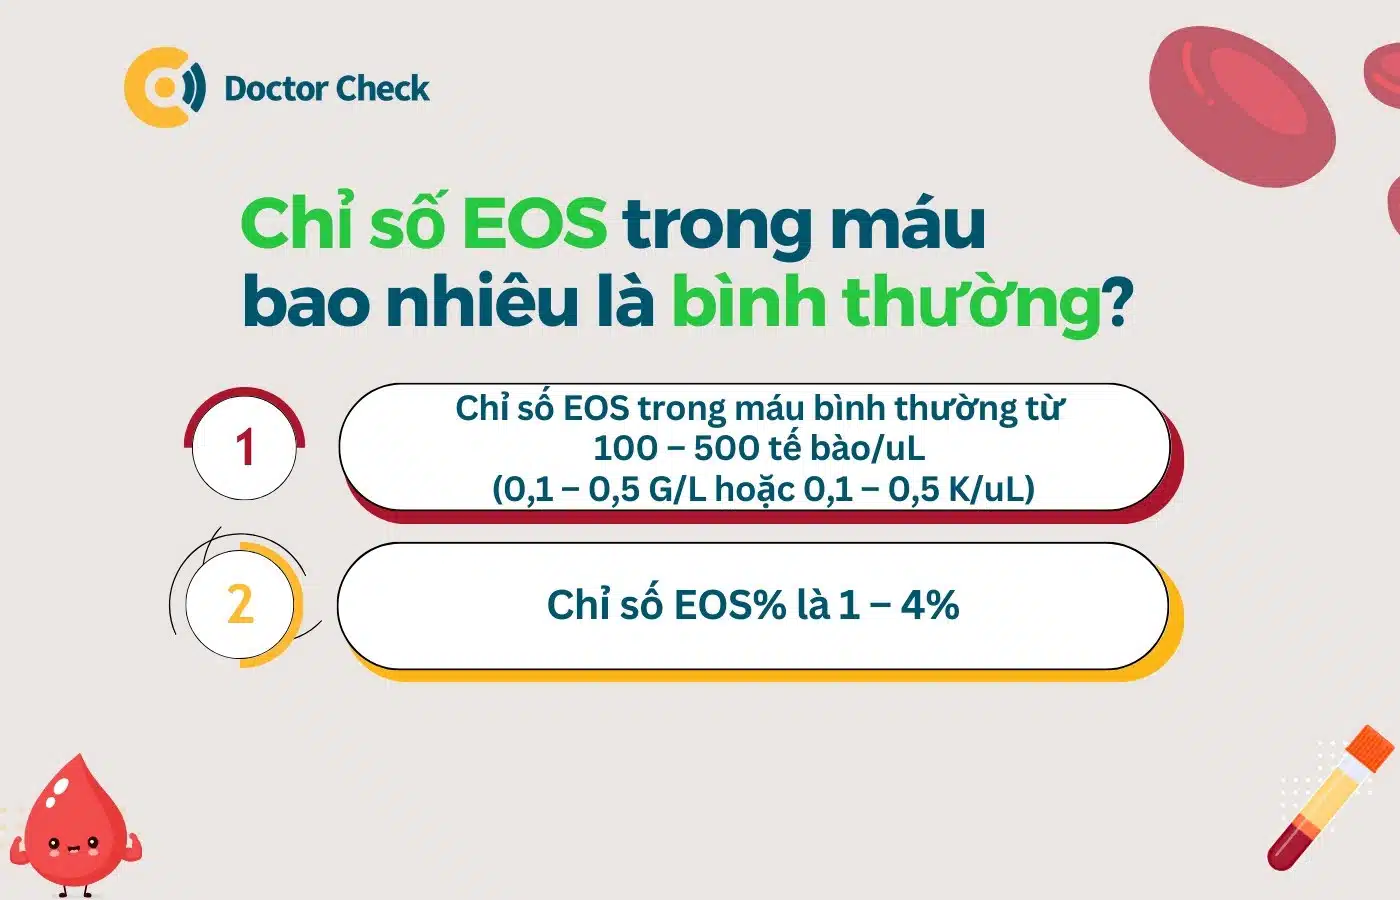 Chỉ số EOS trong máu bao nhiêu là bình thường?